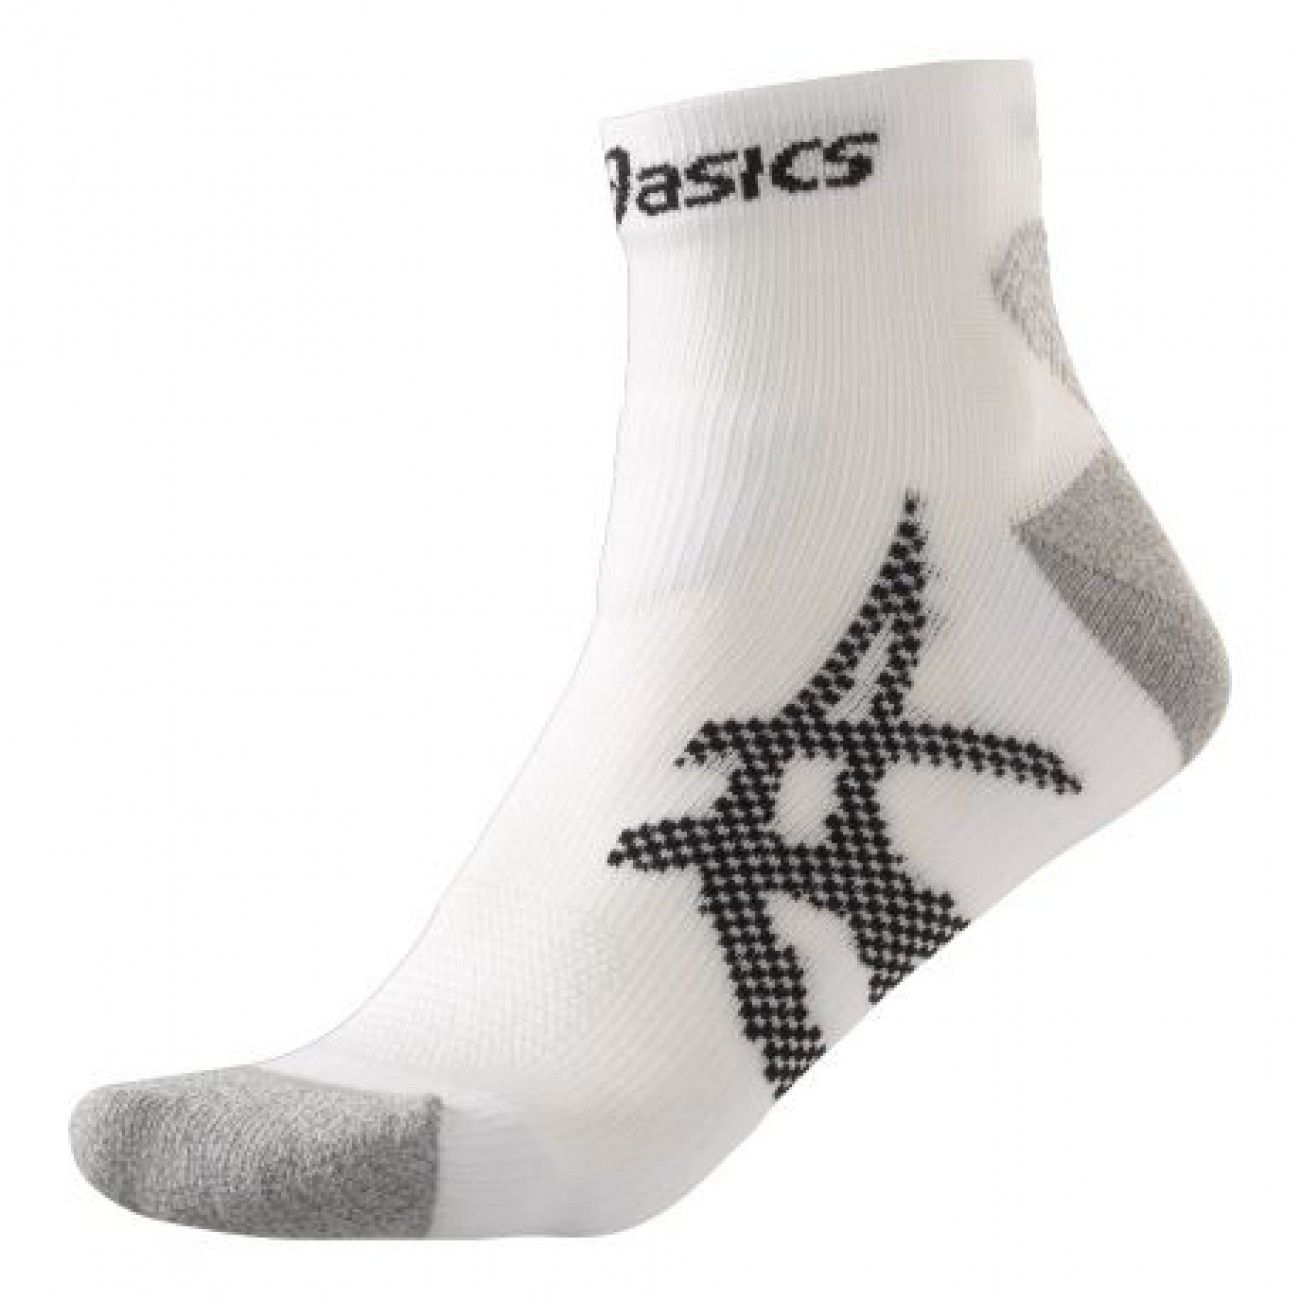 Kayano Socks